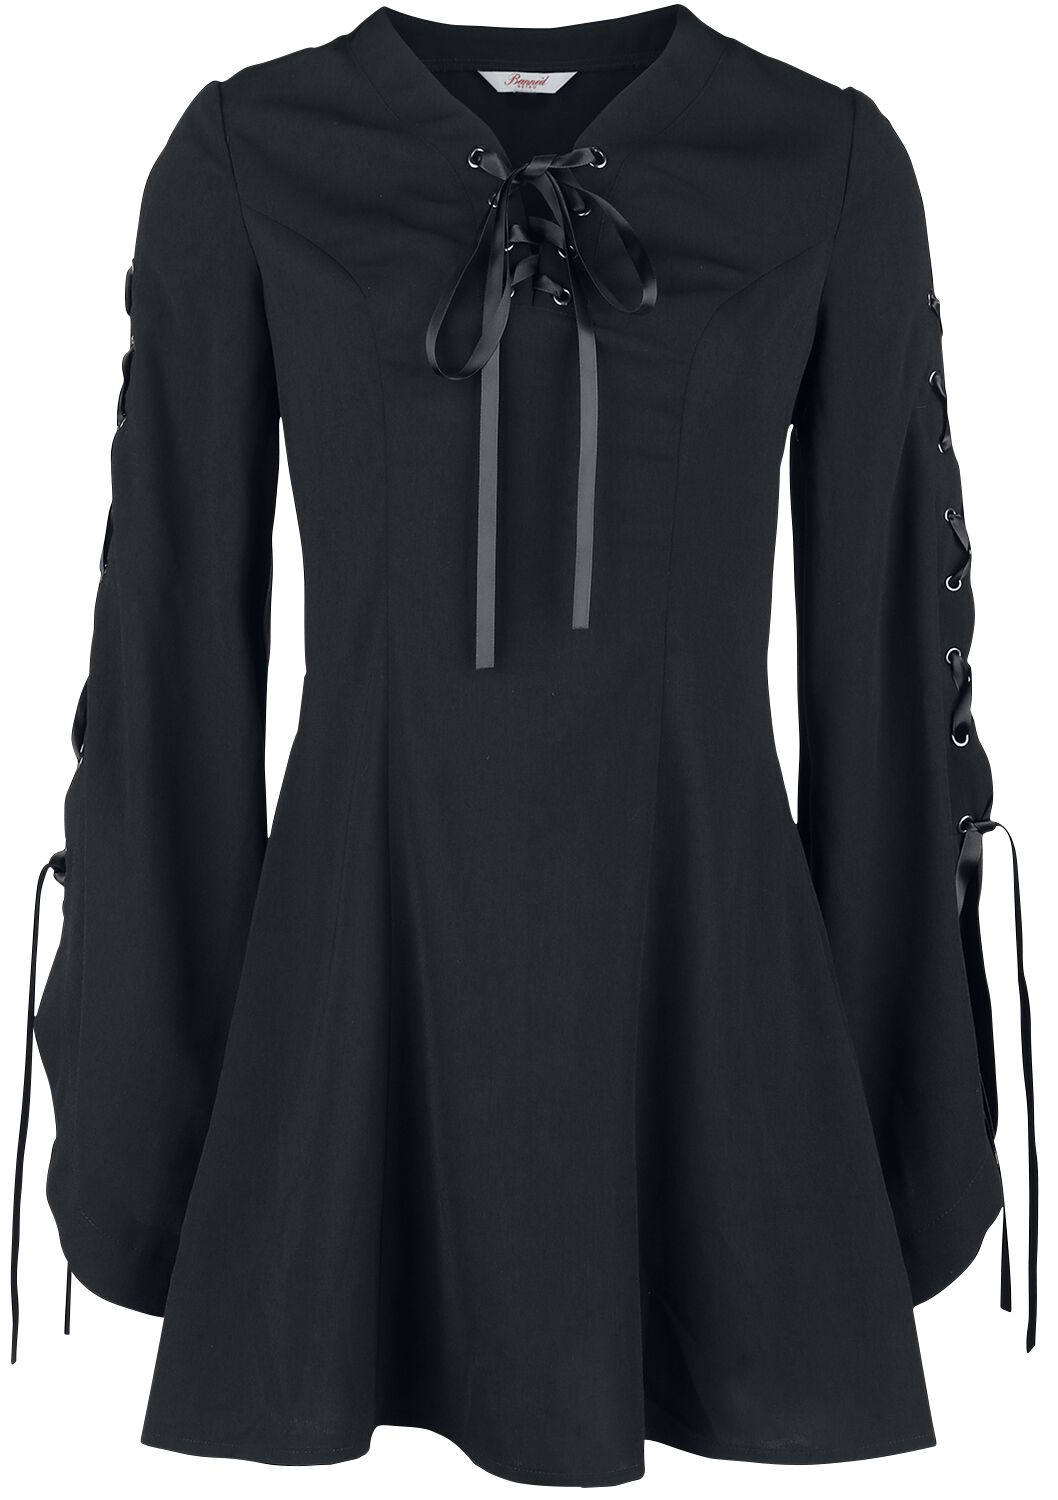 Banned Alternative - Gothic Kurzes Kleid - Jezebel Tie Dress - XS bis 4XL - für Damen - Größe M - schwarz